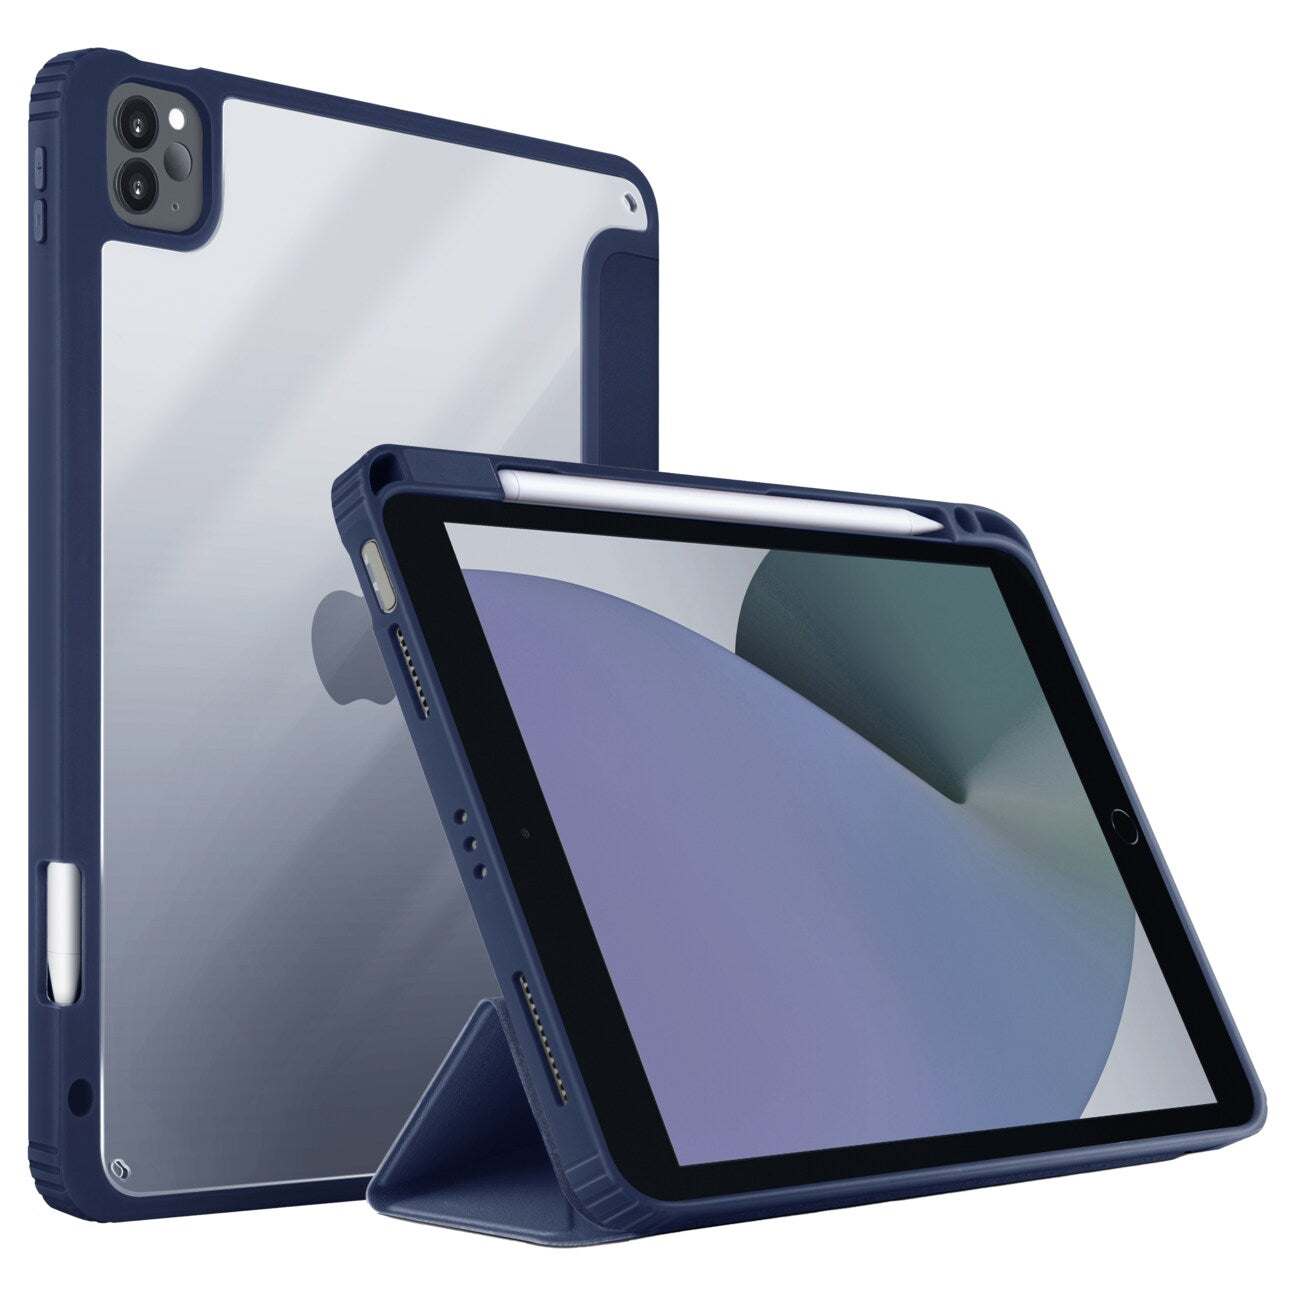 UNIQ Moven Case for iPad Pro 11 inch 2022 & 2021 Model Built in Stand - Slate Blue